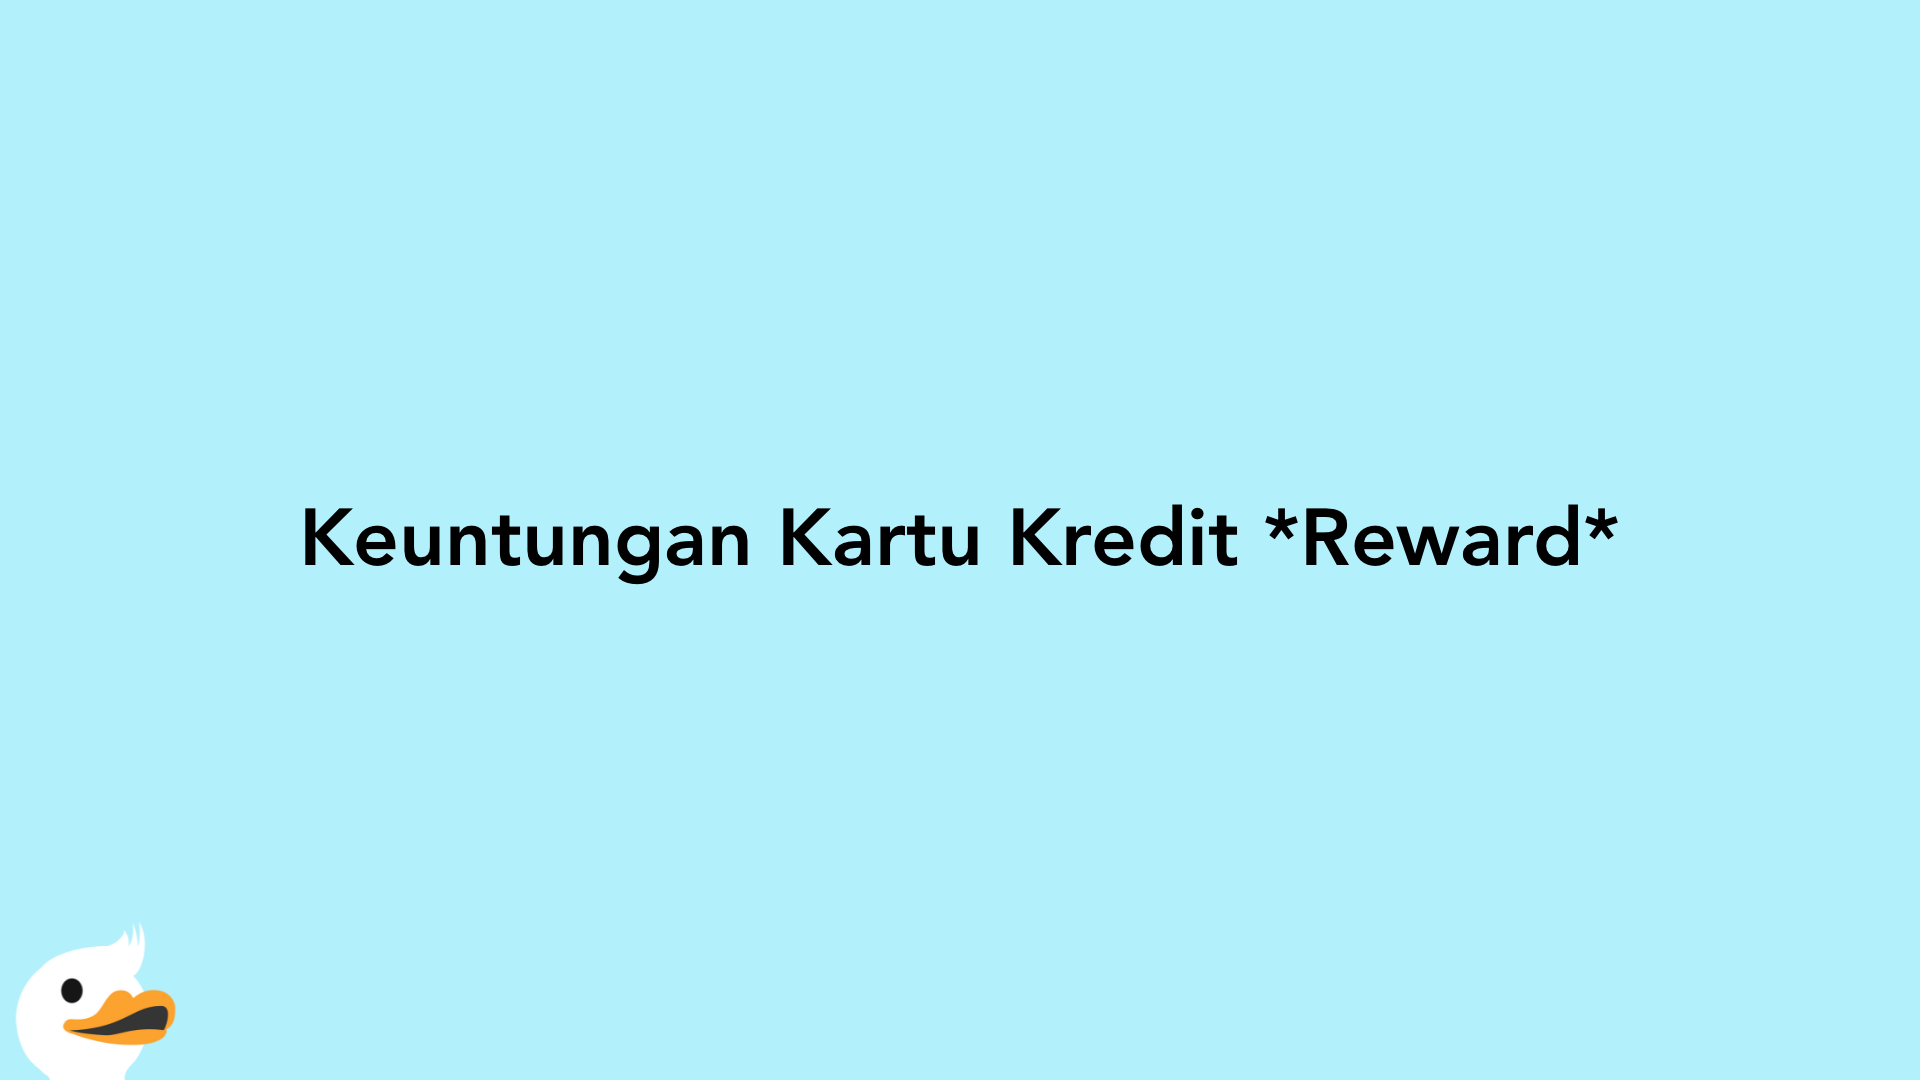 Keuntungan Kartu Kredit Reward